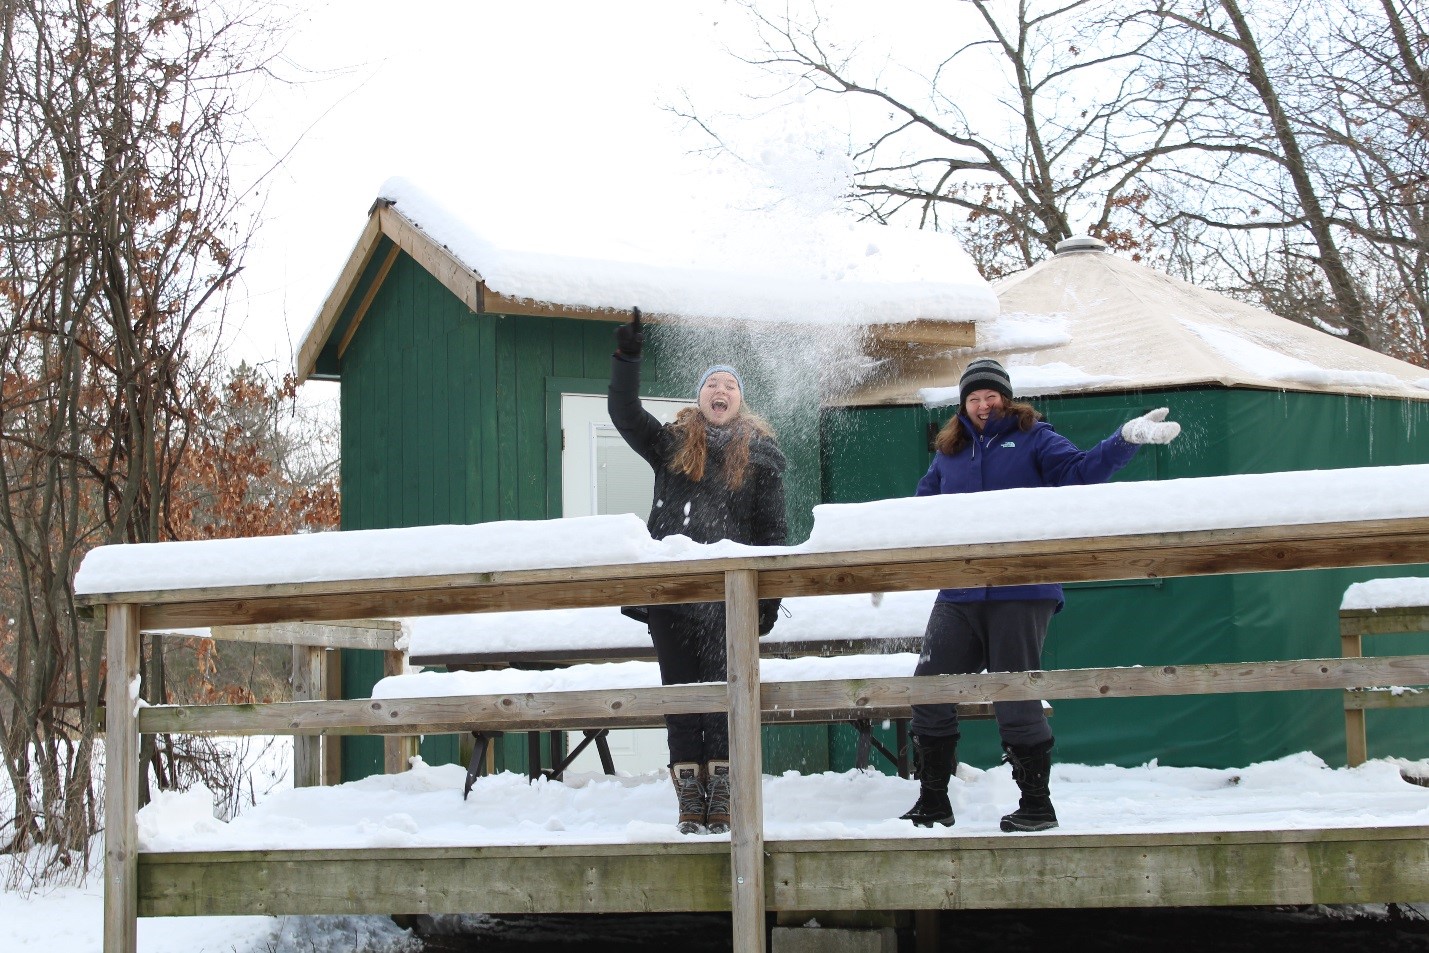 Pinery winter yurt